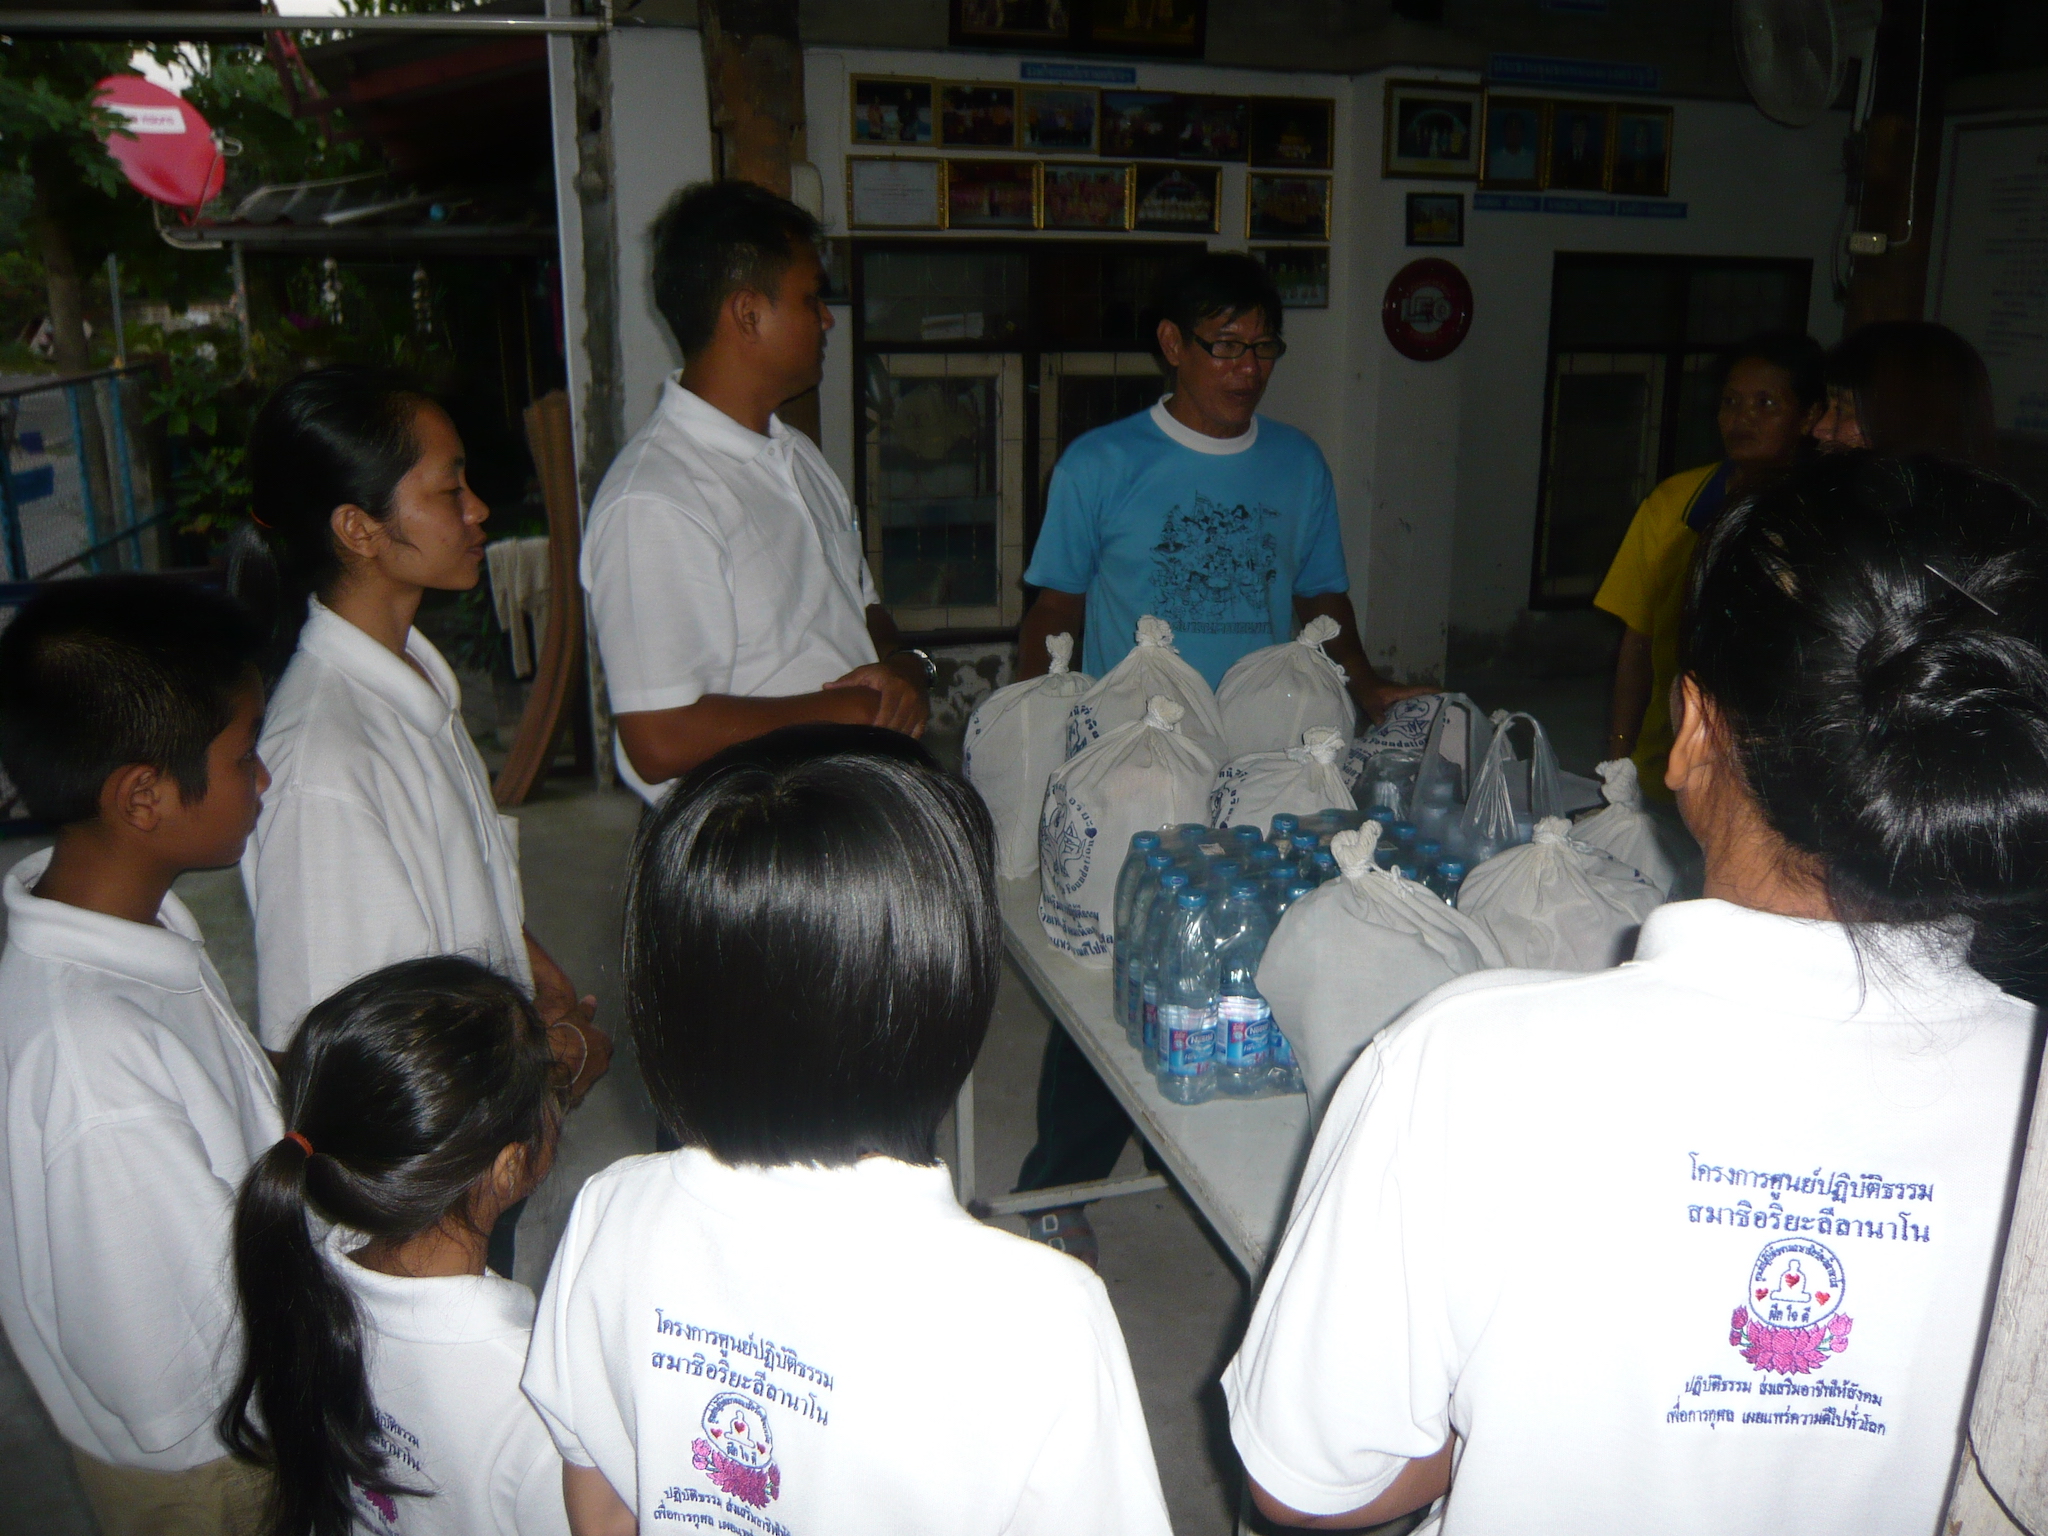 โครงการช่วยผู้ประสบภัยน้ำท่วมจังหวัดขอนแก่นครั้งที่ 3    วันที่ 21 ตุลาคม 2554 ณ   ชุมชนหนองแวงตราชู 3  ตำบลในเมือง   อำเภอเมืองขอนแก่น   จังหวัดขอนแก่น